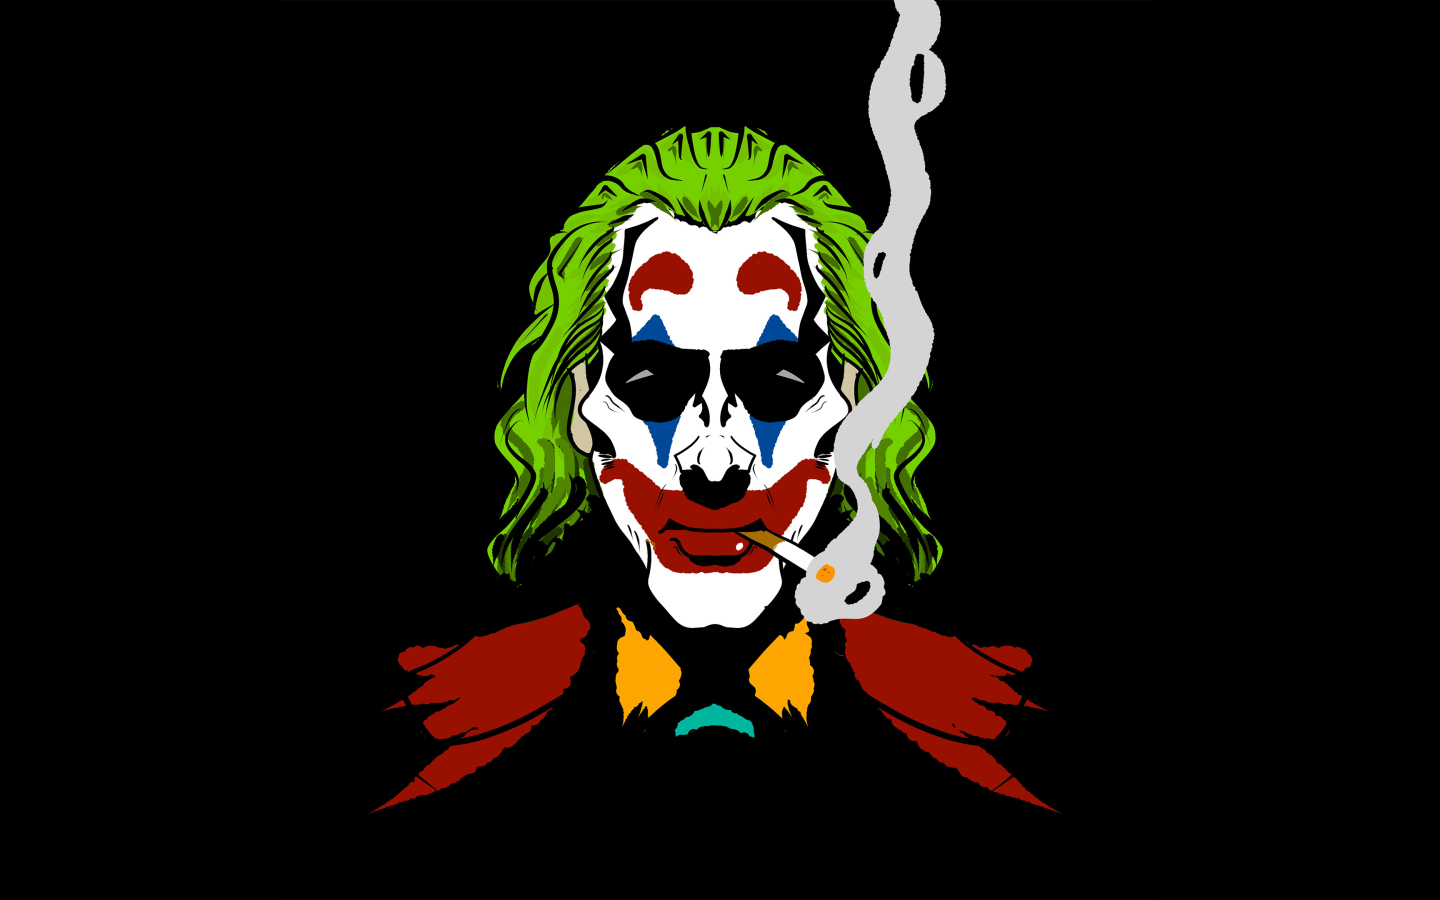 1440x900 Resolution Joker Smoking 1440x900 Wallpaper - Wallpapers Den